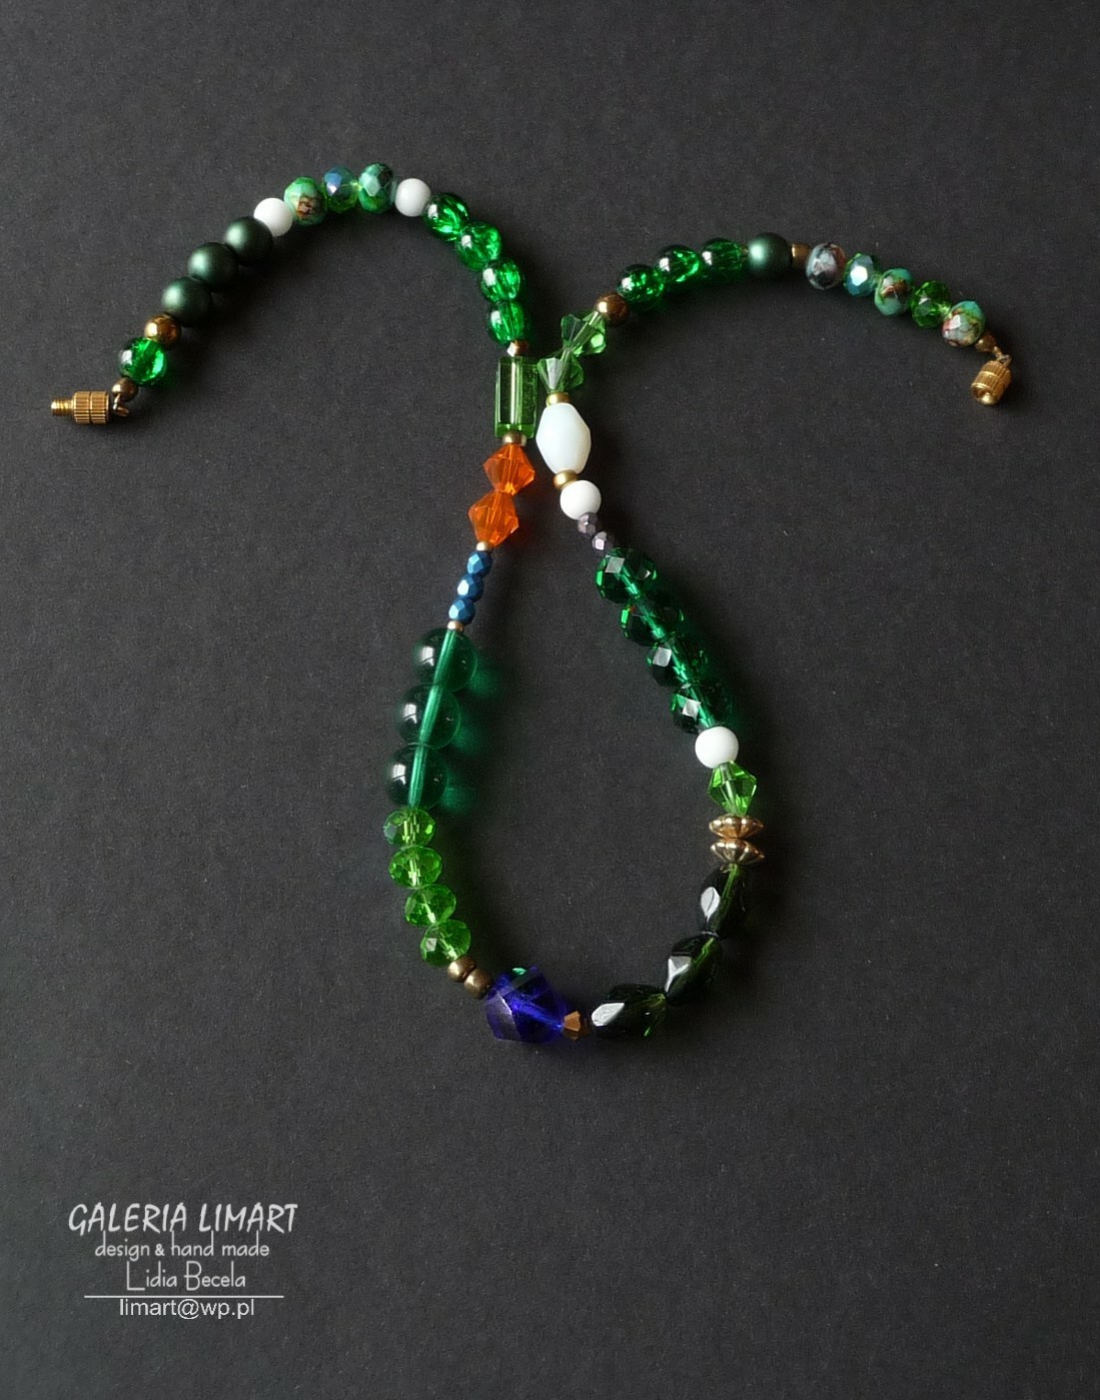 uroczy delikatny naszyjnik ze zbliżonej wielkości i kształtu kryształkami w zielon-biało-pomarańczowo-kobaltowej tonacji